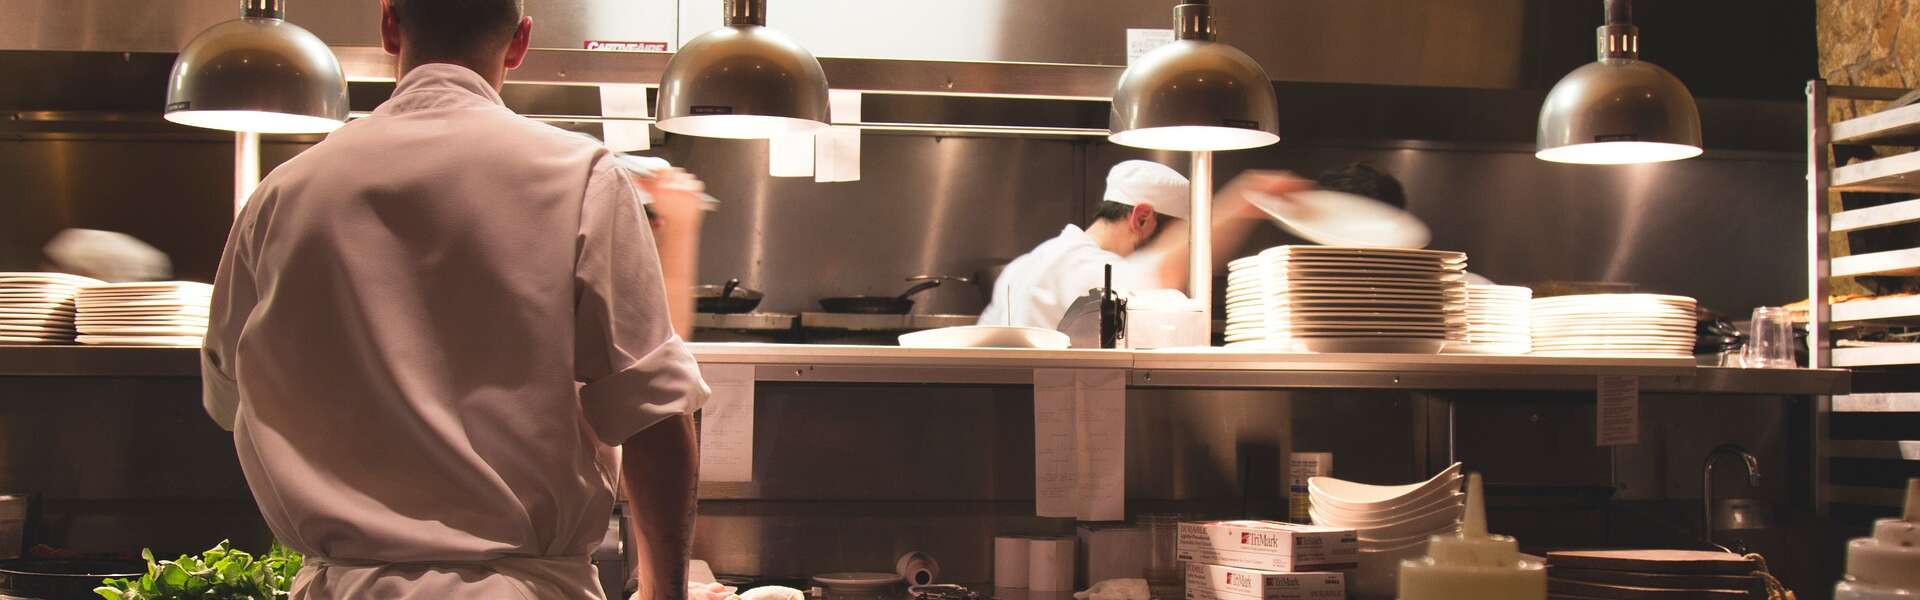 a waiter stands near an open kitchen where chefs work